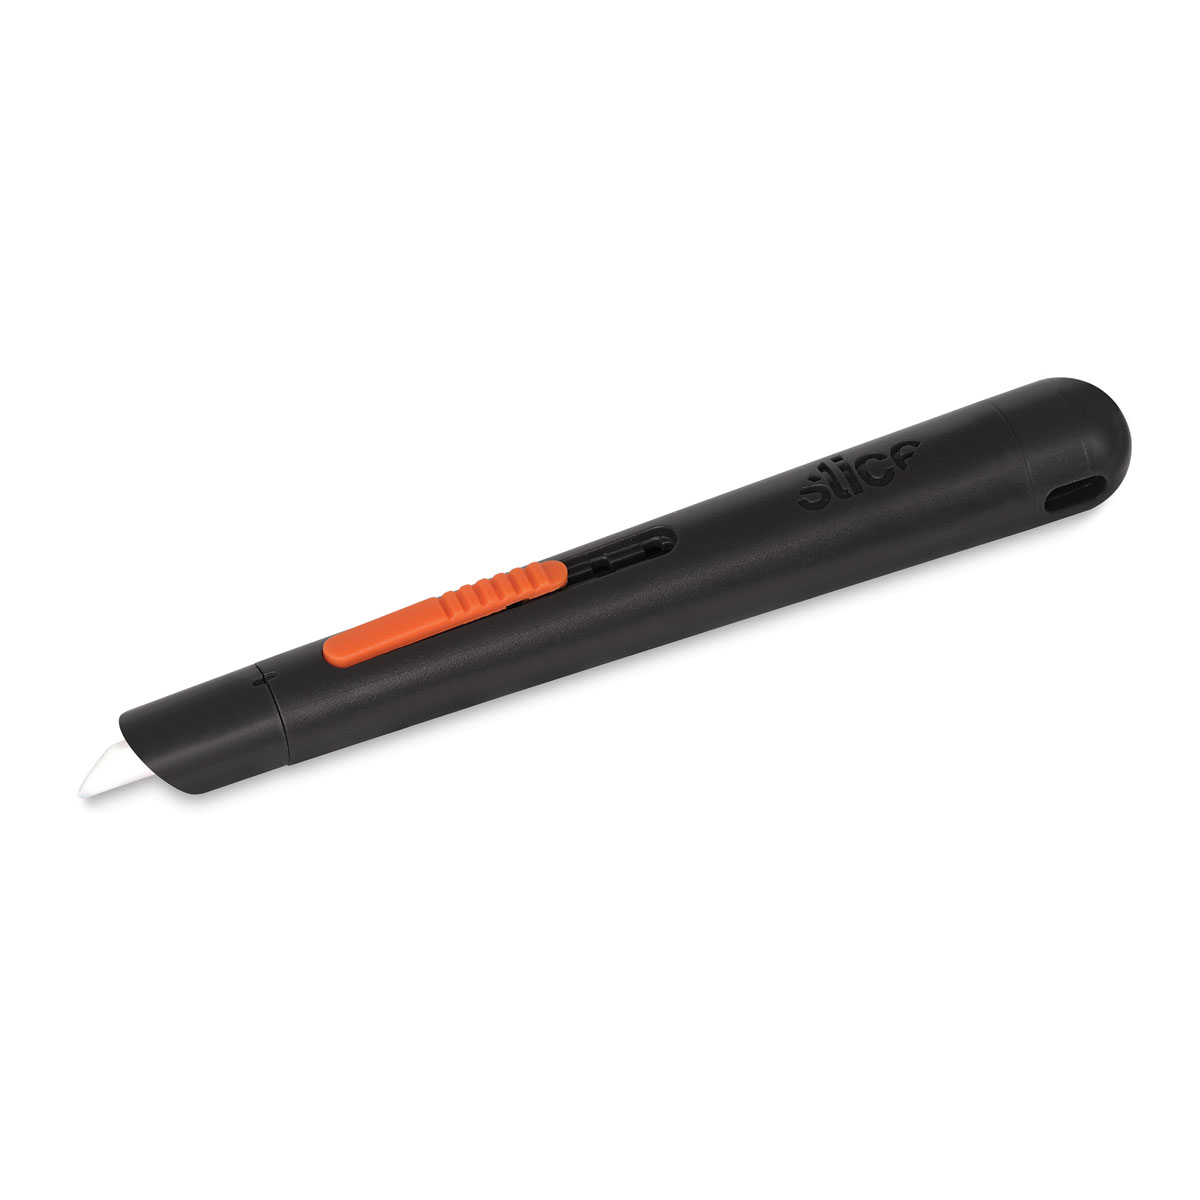 Slice® Auto Retractable Pen Cutter